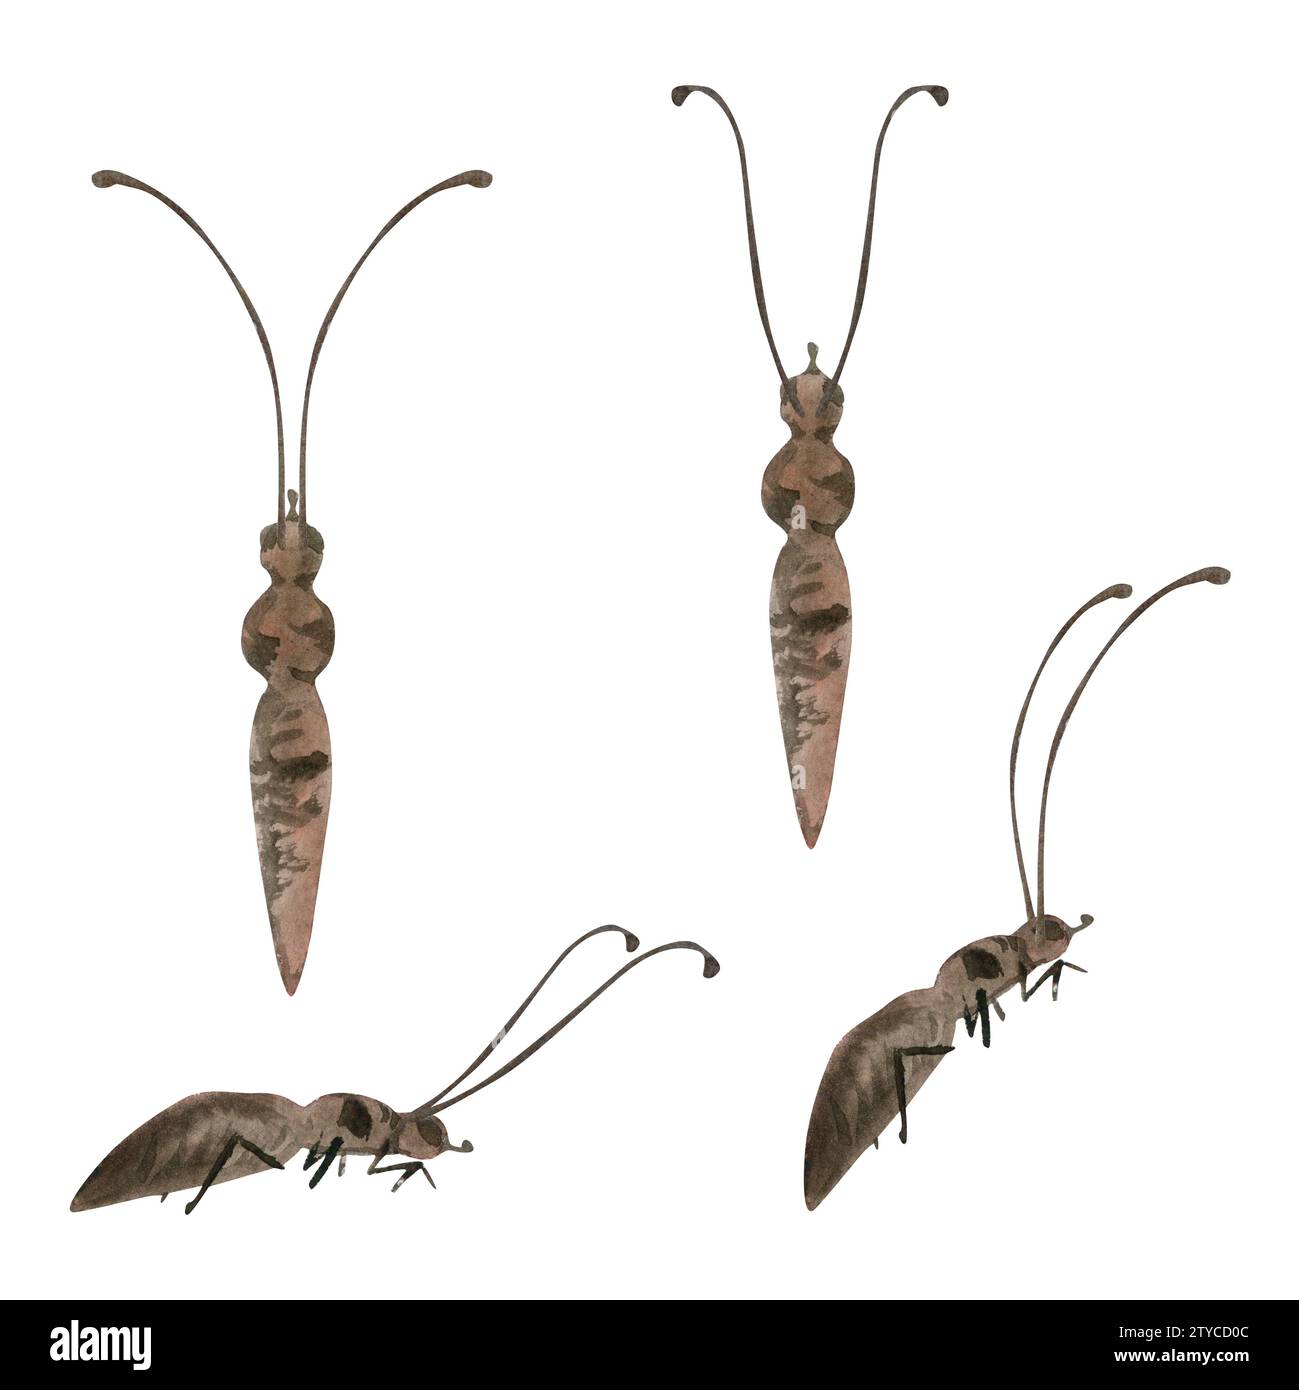 Illustrazione acquerello a mano farfalla insetto vespa formica falena insetto. Corpo realistico con antenne, vista frontale laterale. Set di oggetti isolati su bianco Foto Stock